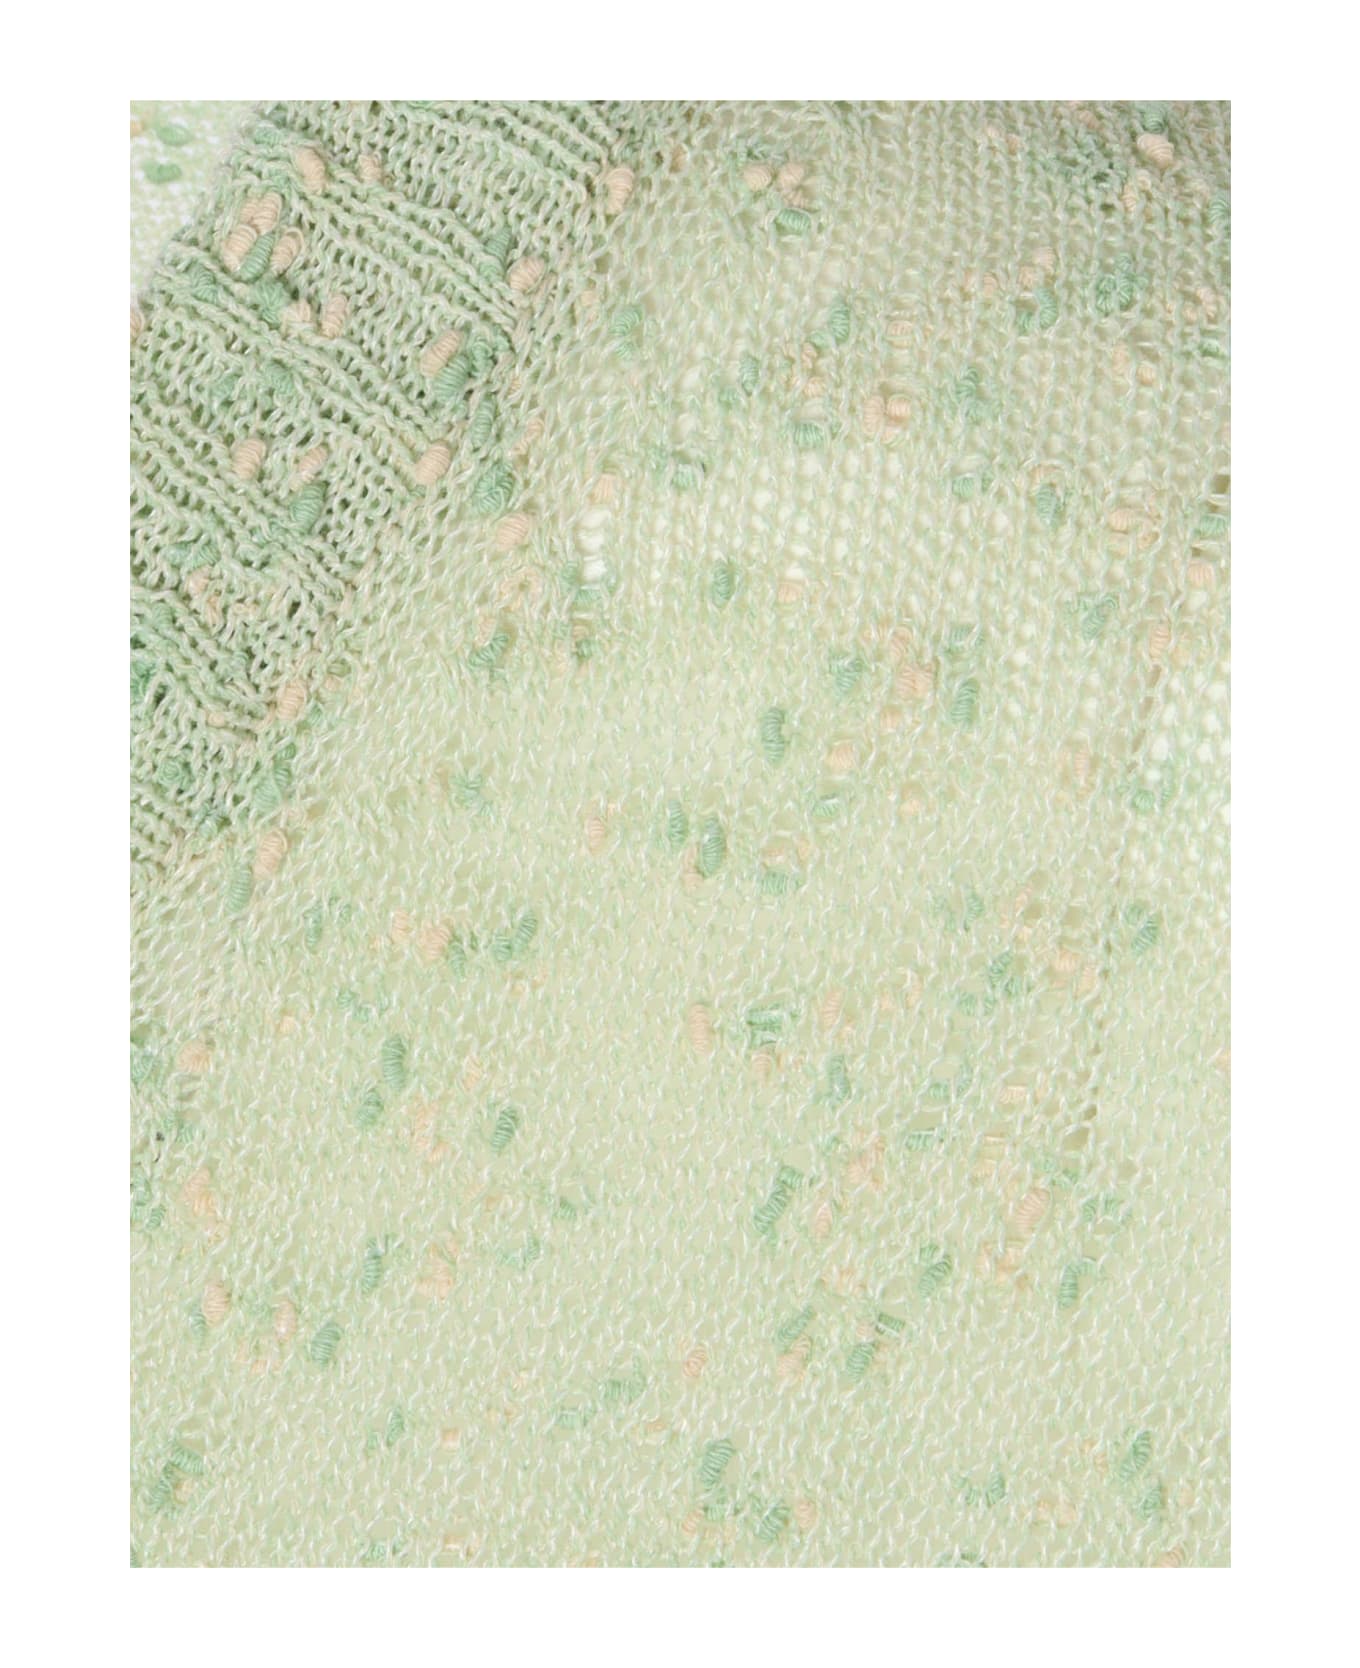 Aspesi Green Sweater - GREEN ニットウェア